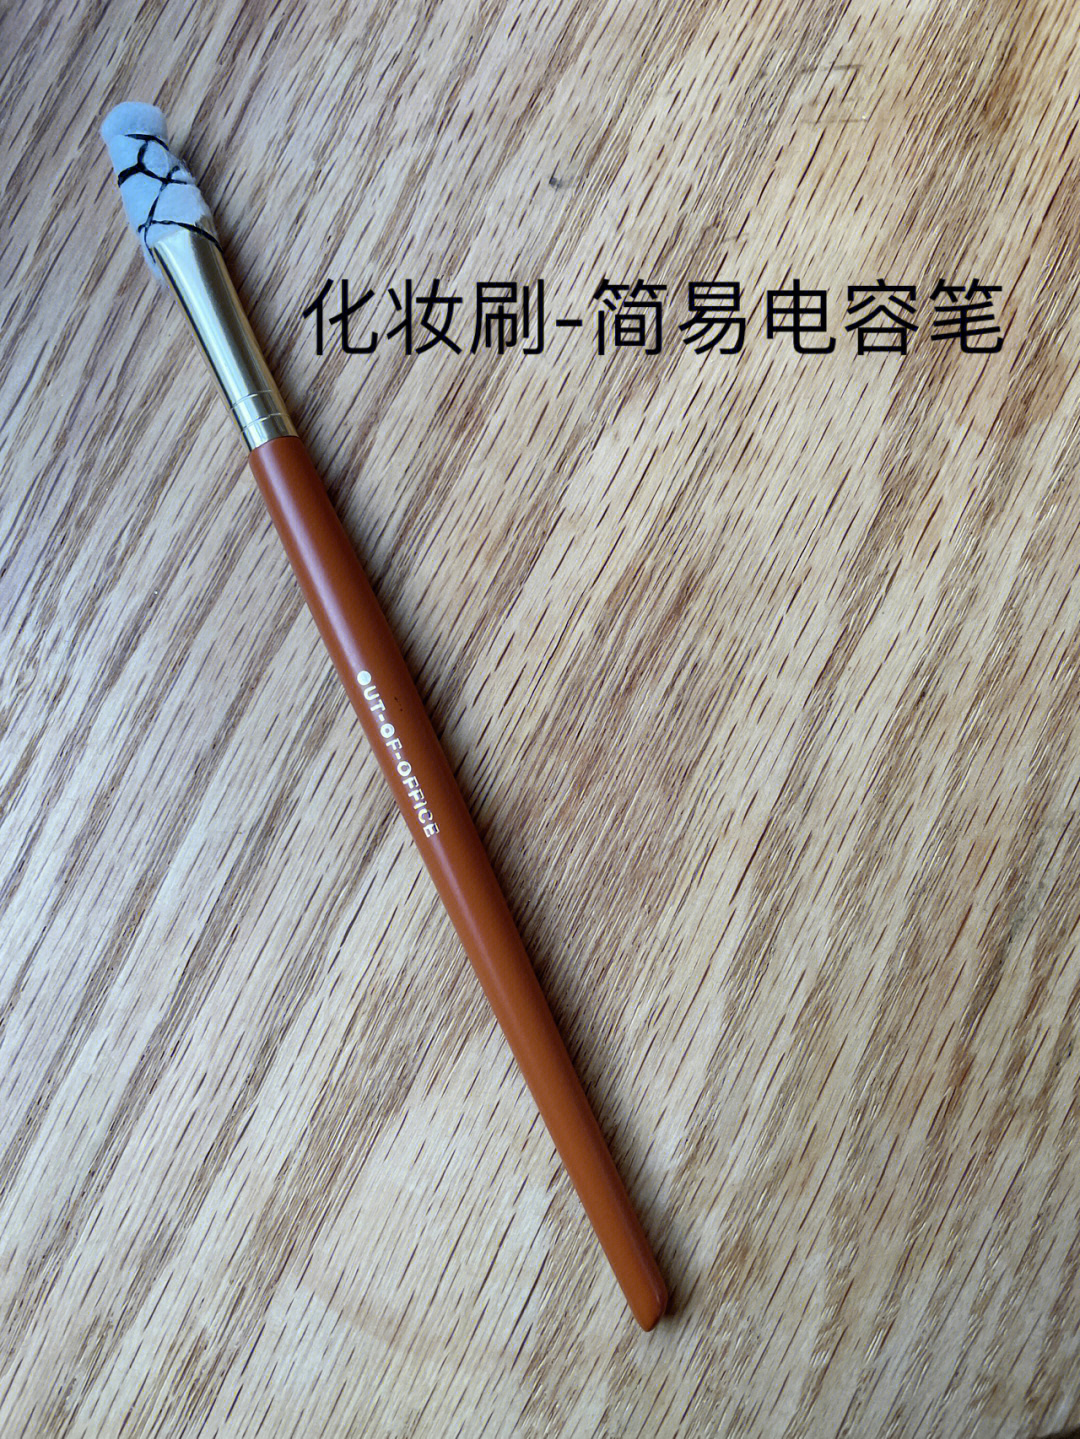 自制电容笔简易